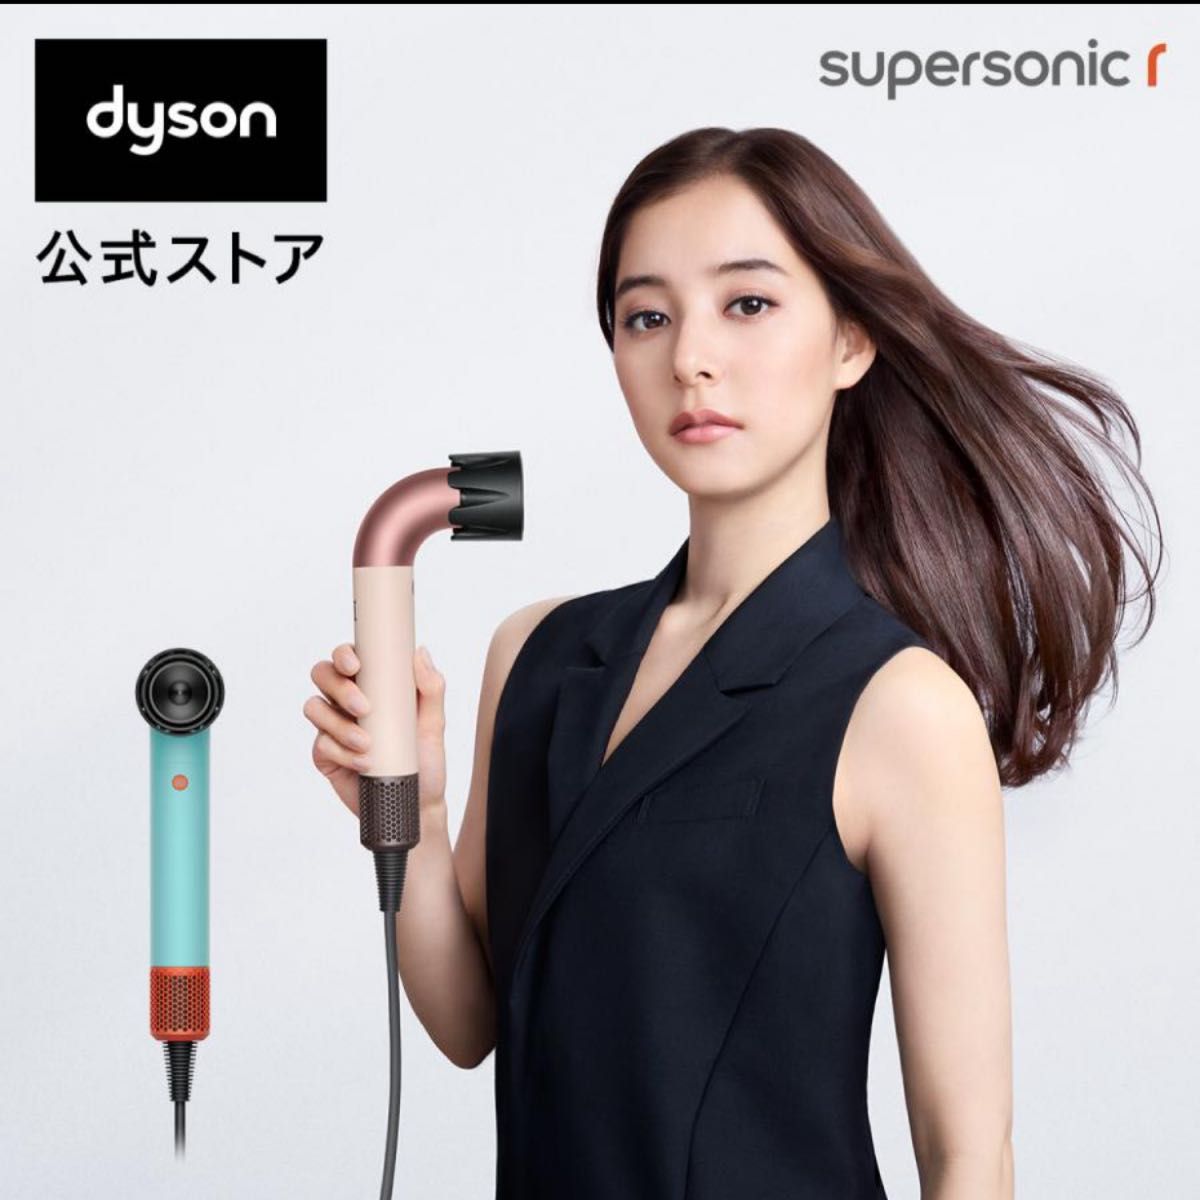  ダイソン Dyson Supersonic r トパーズ HD17 スーパーソニック アール